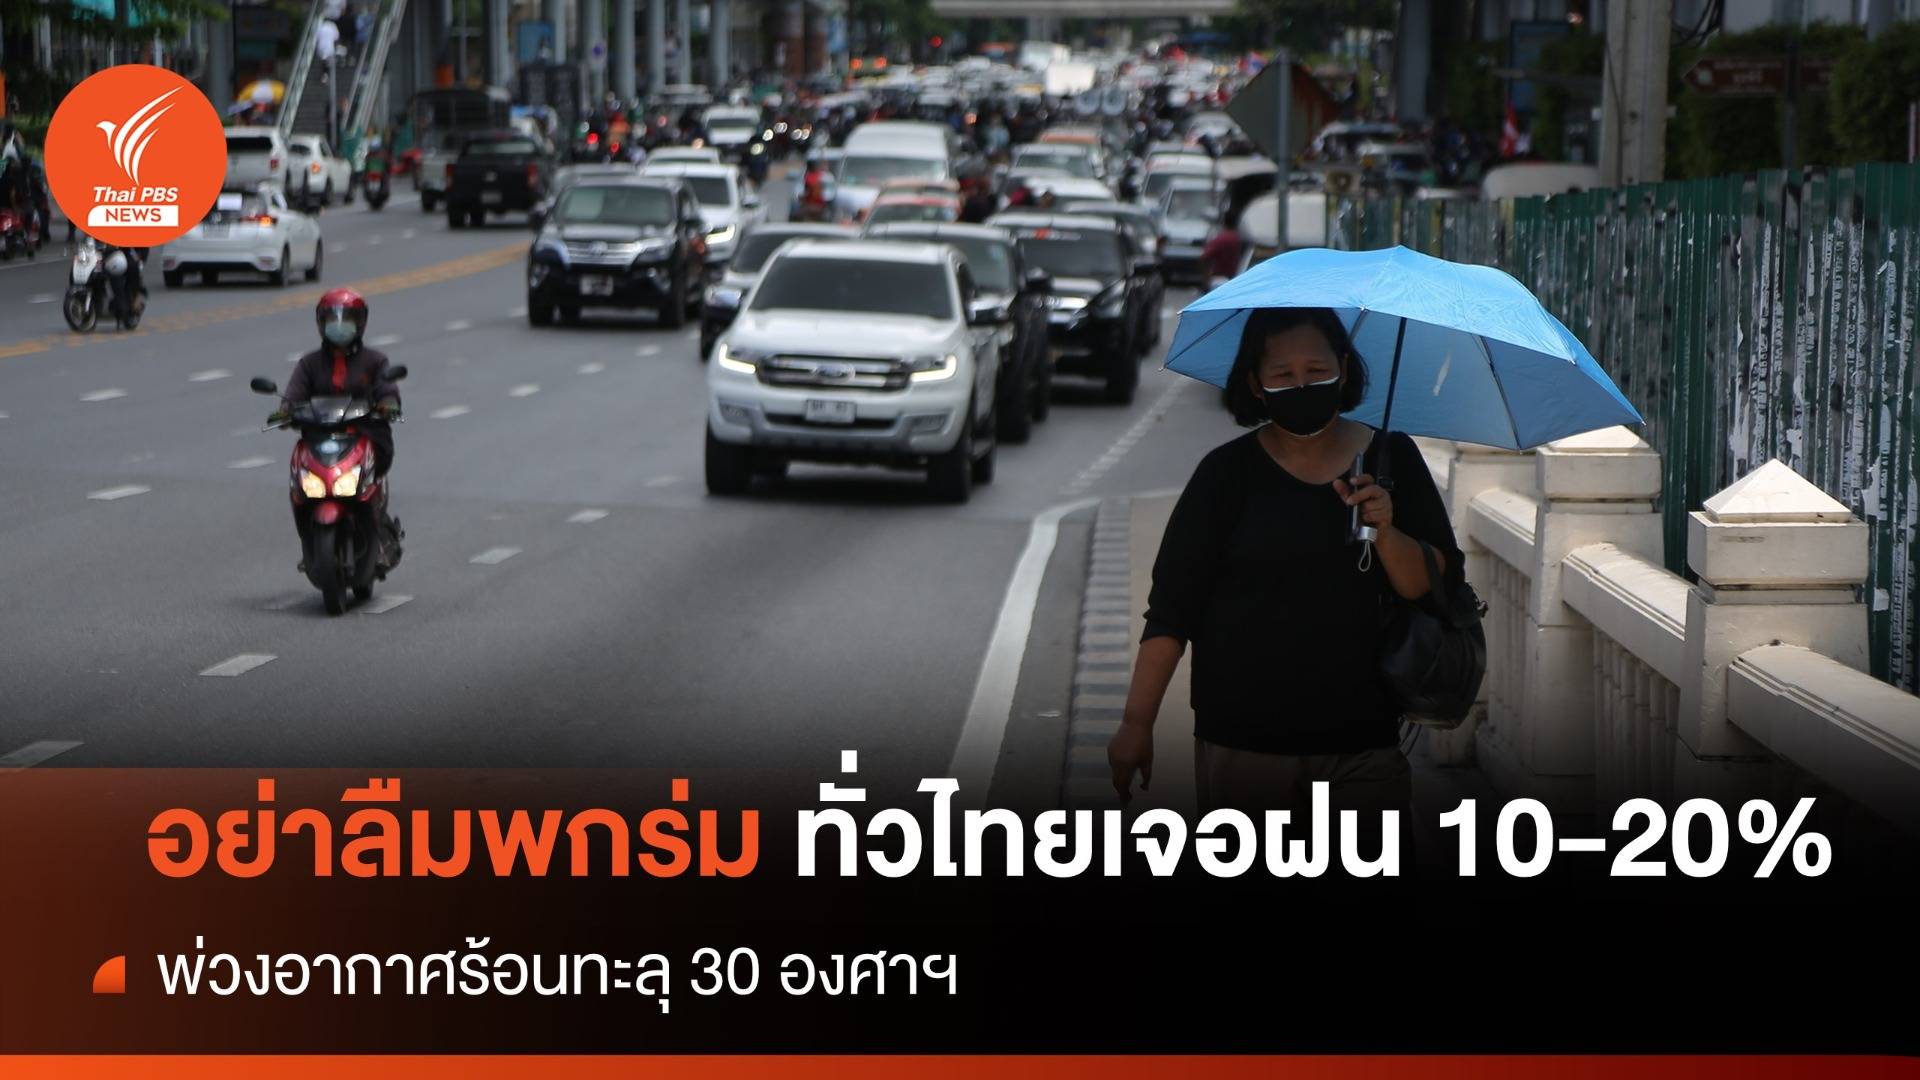 สภาพอากาศวันนี้ ทั่วไทยเจอฝน 10-20% อากาศร้อนทะลุ 30 องศาฯ 